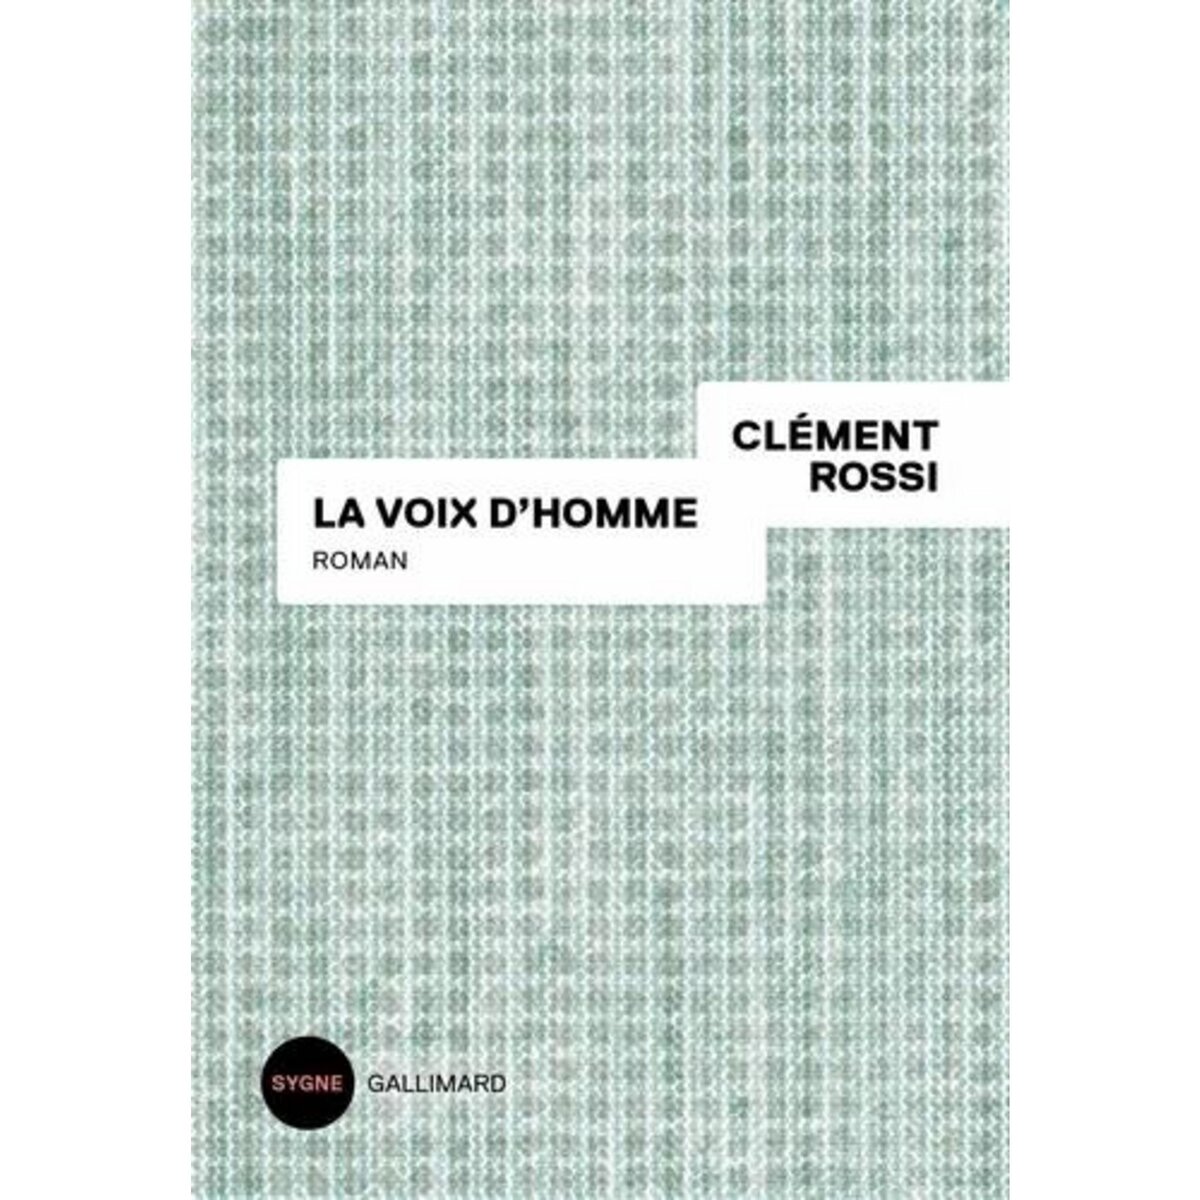  LA VOIX D'HOMME, Rossi Clément